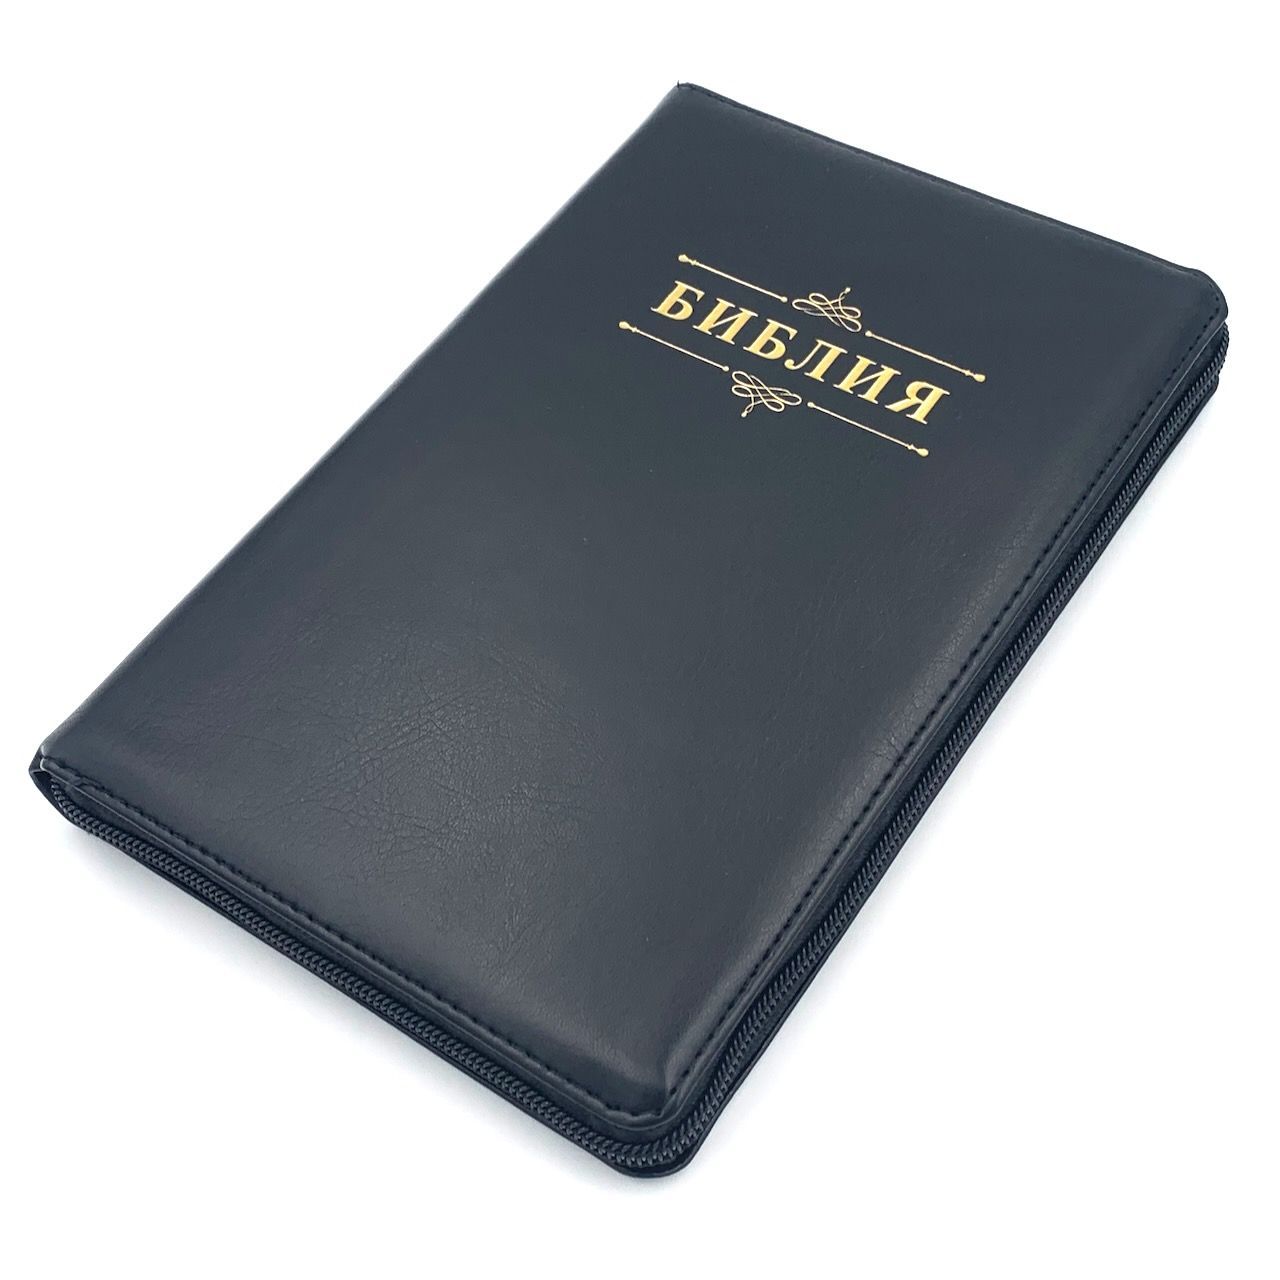 Библия 055zti код 23055-13 надпись "Библия", переплет из искусственной кожи на молнии с индексами, цвет черный, средний формат, 143*220 мм